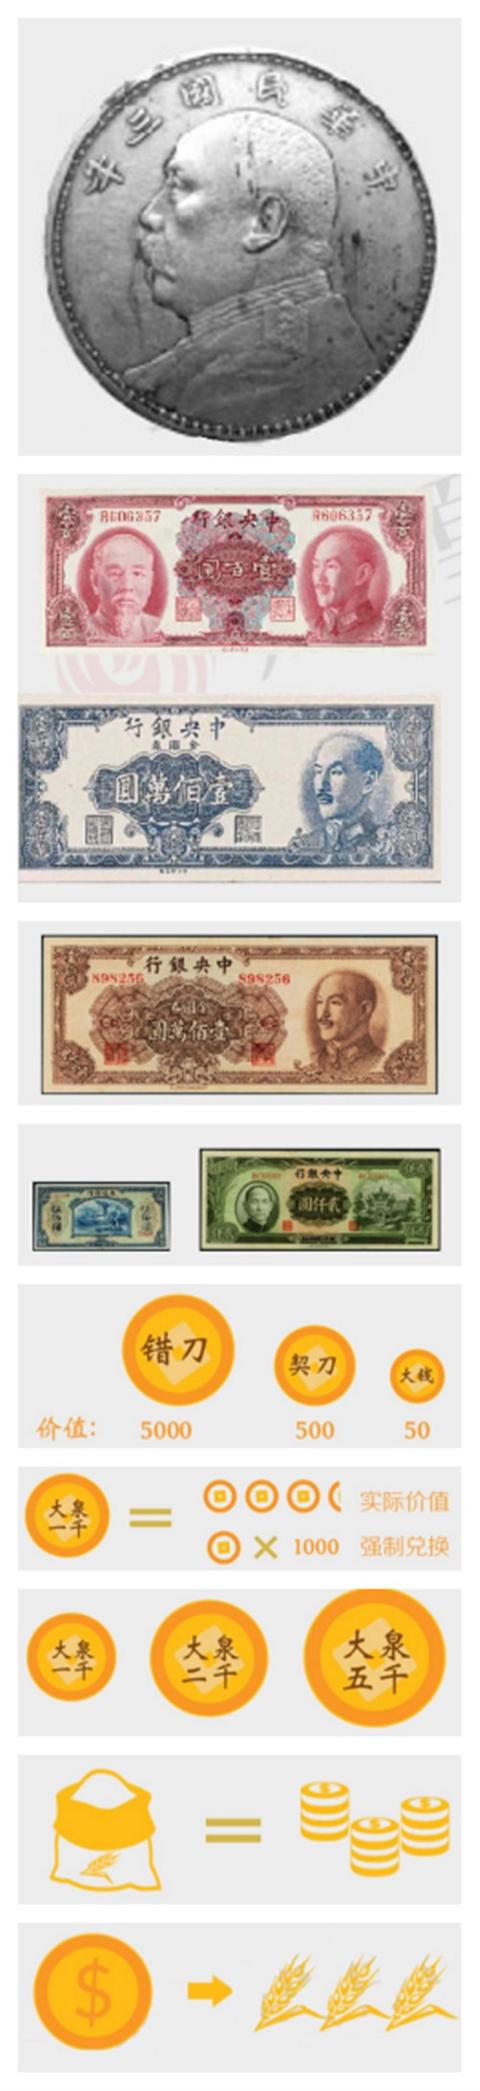 中国数字货币什么时候发行